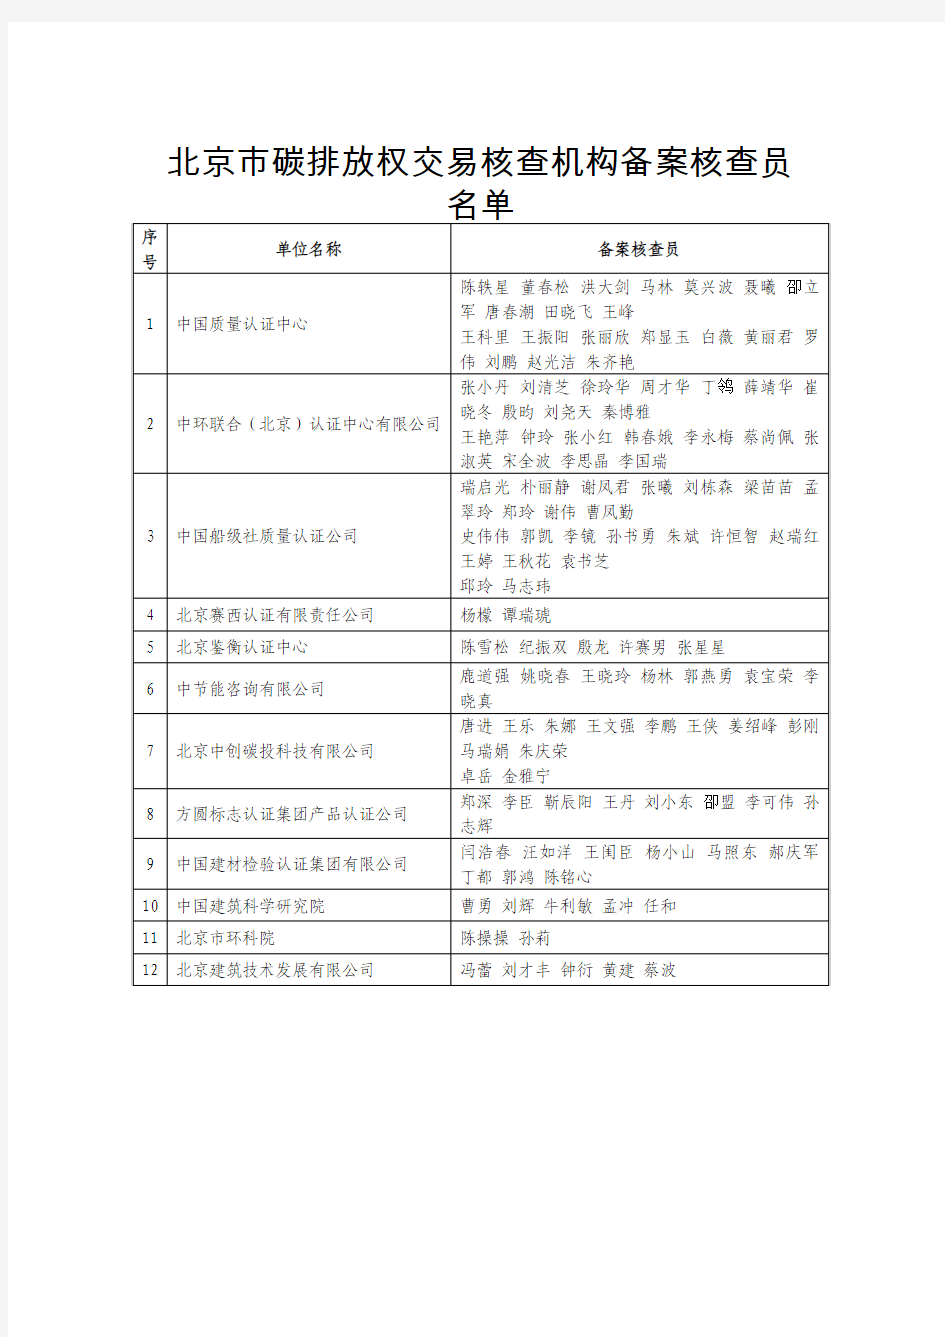 北京市碳排放权交易核查机构备案核查员名单